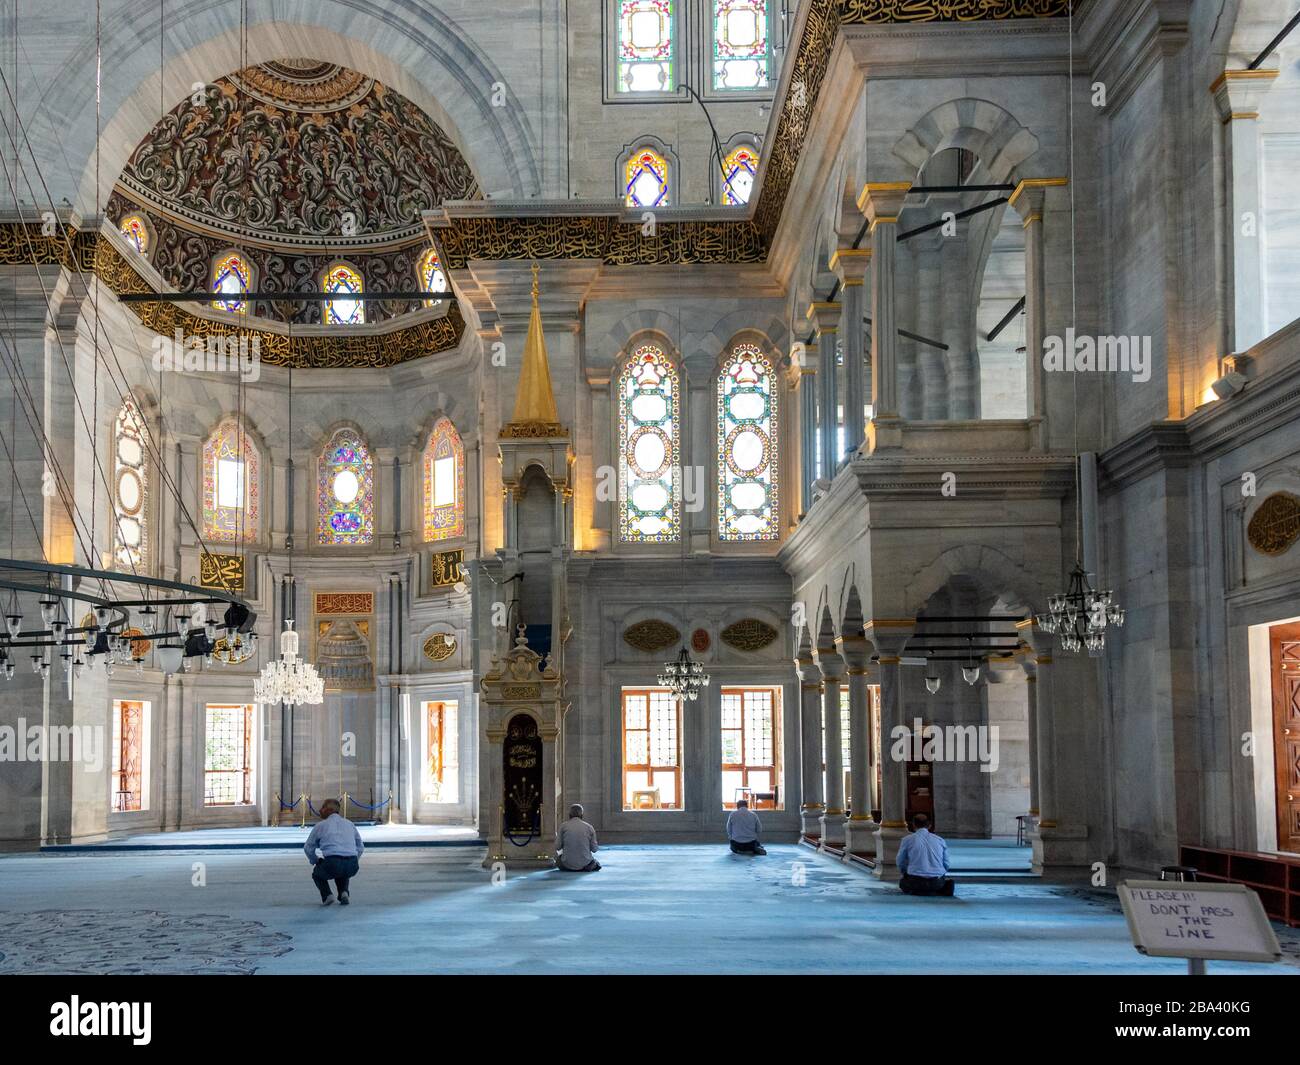 Les croyants prient à la Mosquée Nuruosmaniye, Istanbul, Turquie Banque D'Images